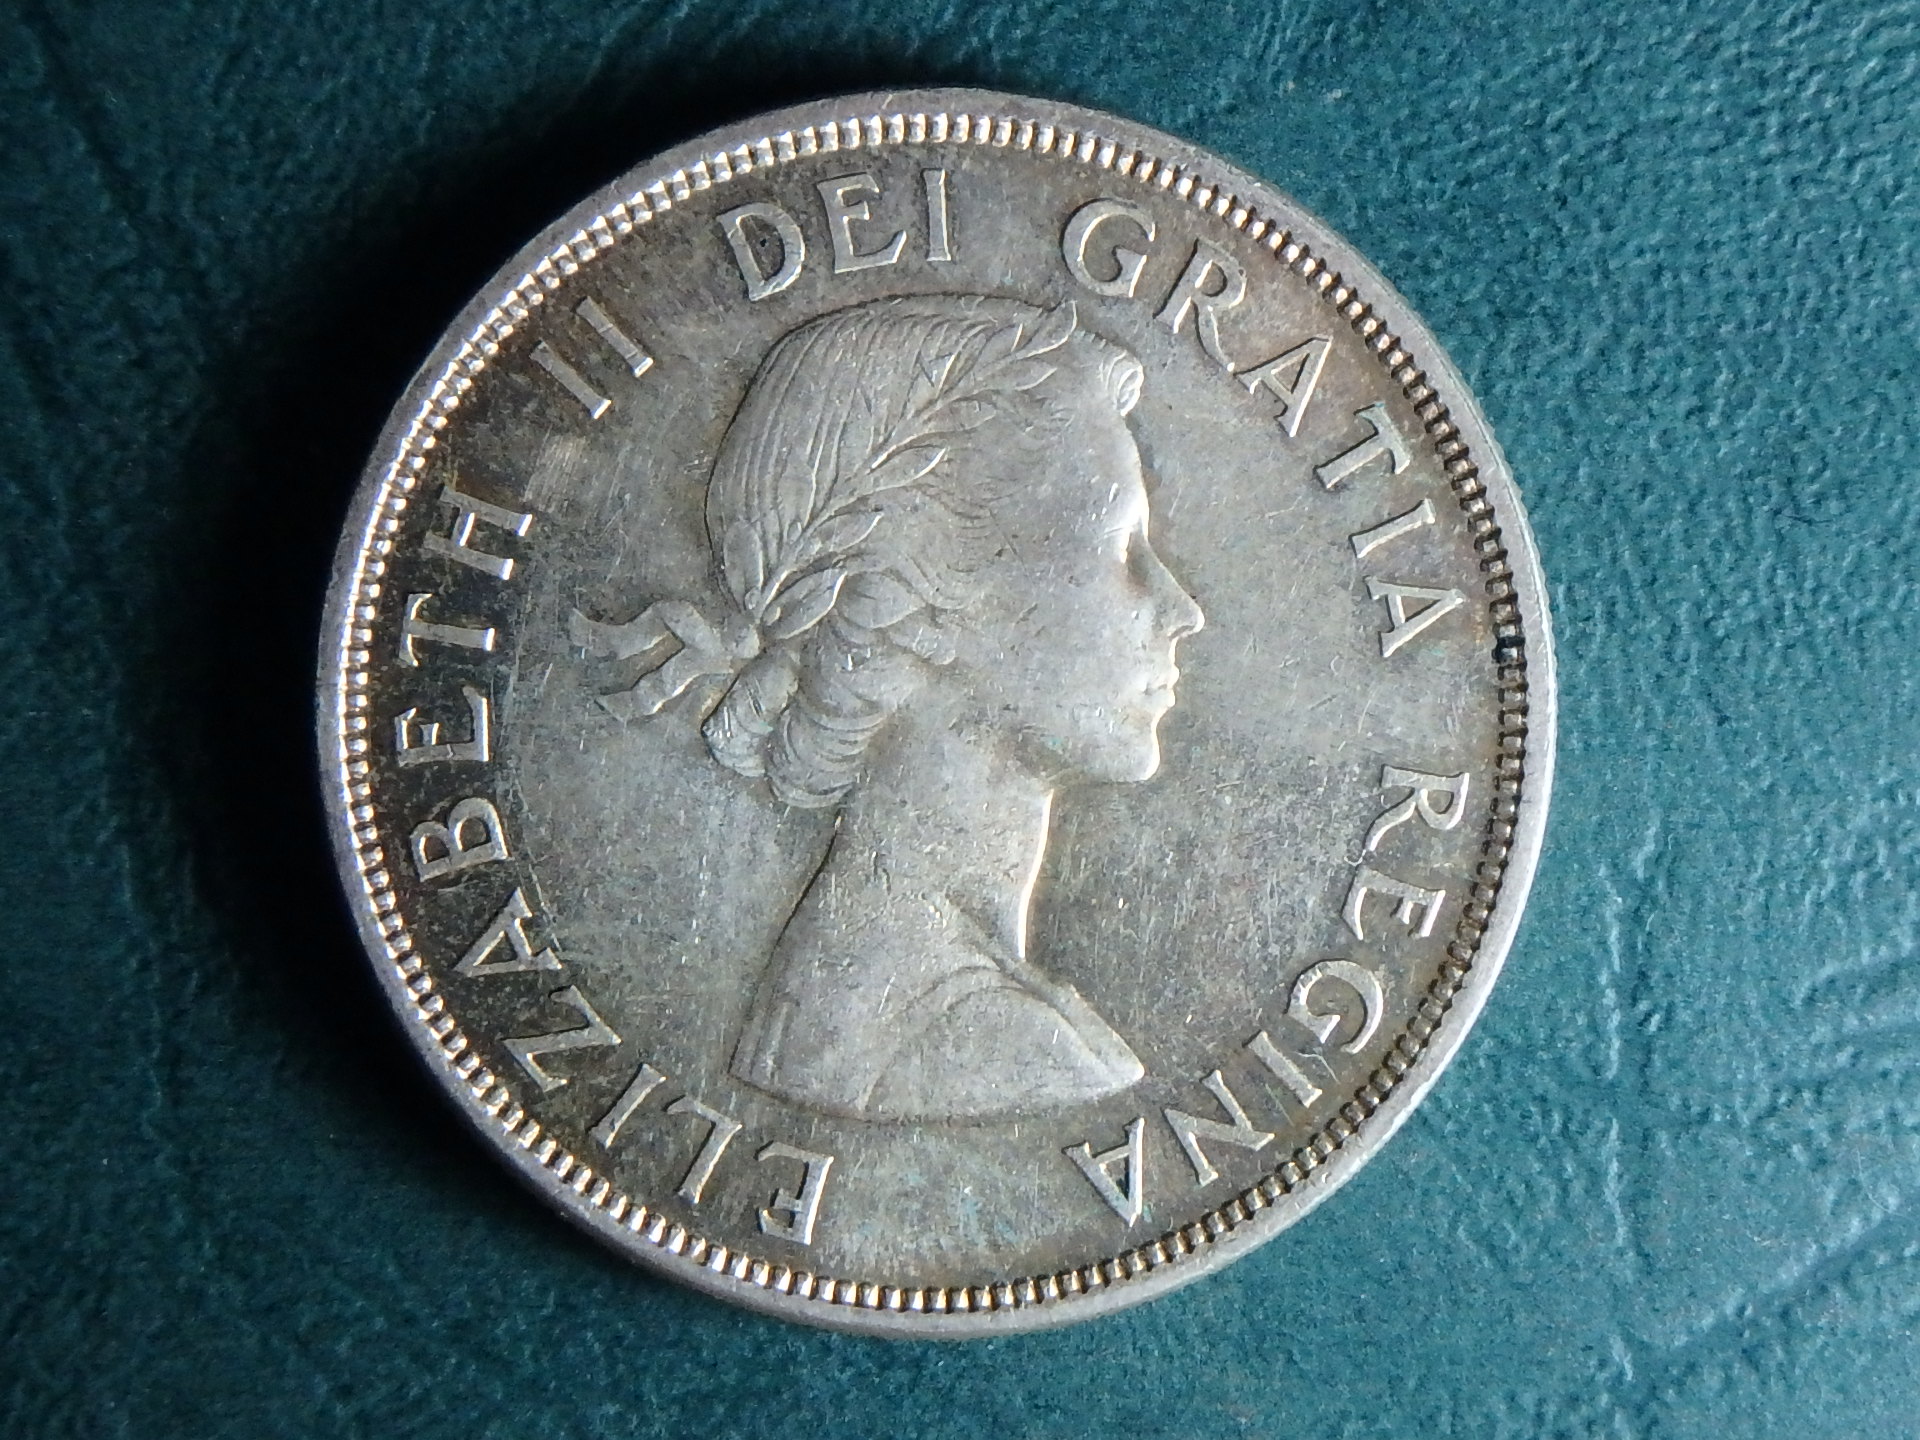 1960 Canada 1 dol obv.JPG